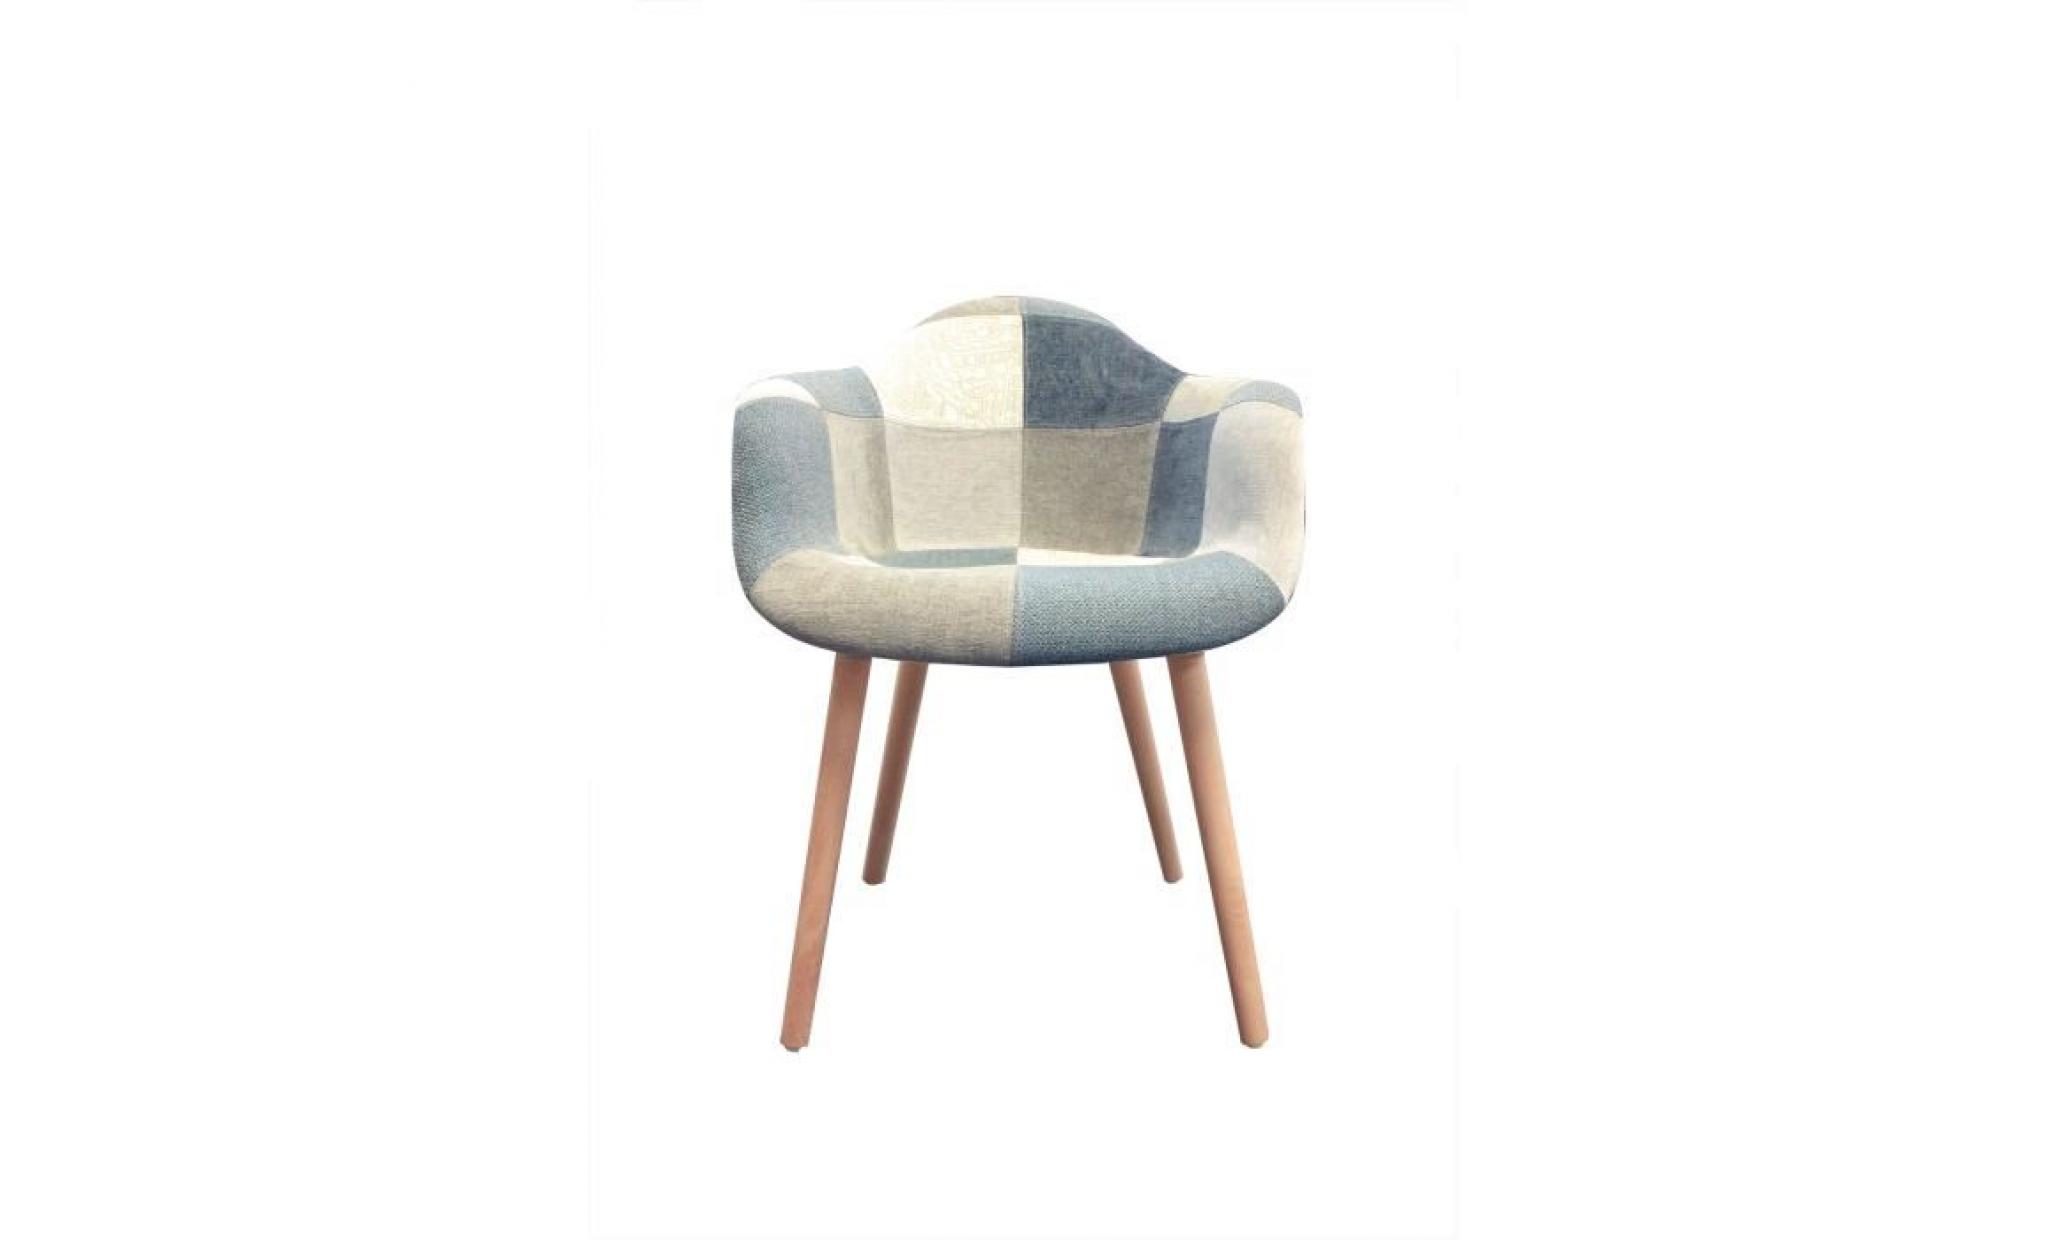 fauteuil tissu patchwork bleu beige gris   chaise design scandinave   pieds bois   azur